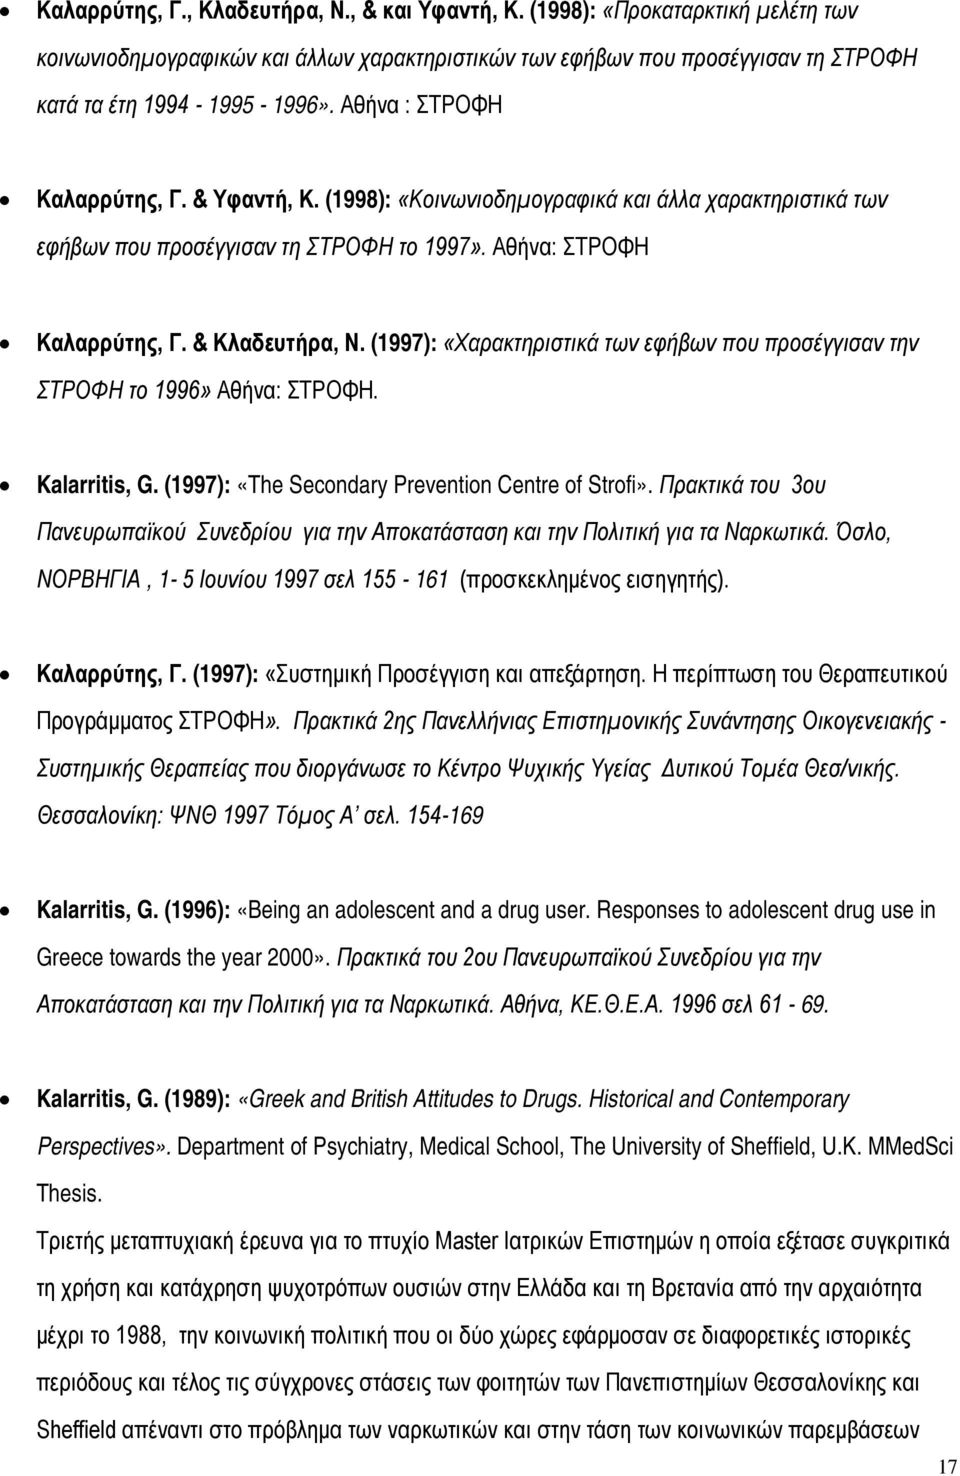 (1997): «Χαρακτηριστικά των εφήβων που προσέγγισαν την ΣΤΡΟΦΗ το 1996» Αθήνα: ΣΤΡΟΦΗ. Kalarritis, G. (1997): «The Secondary Prevention Centre of Strofi».